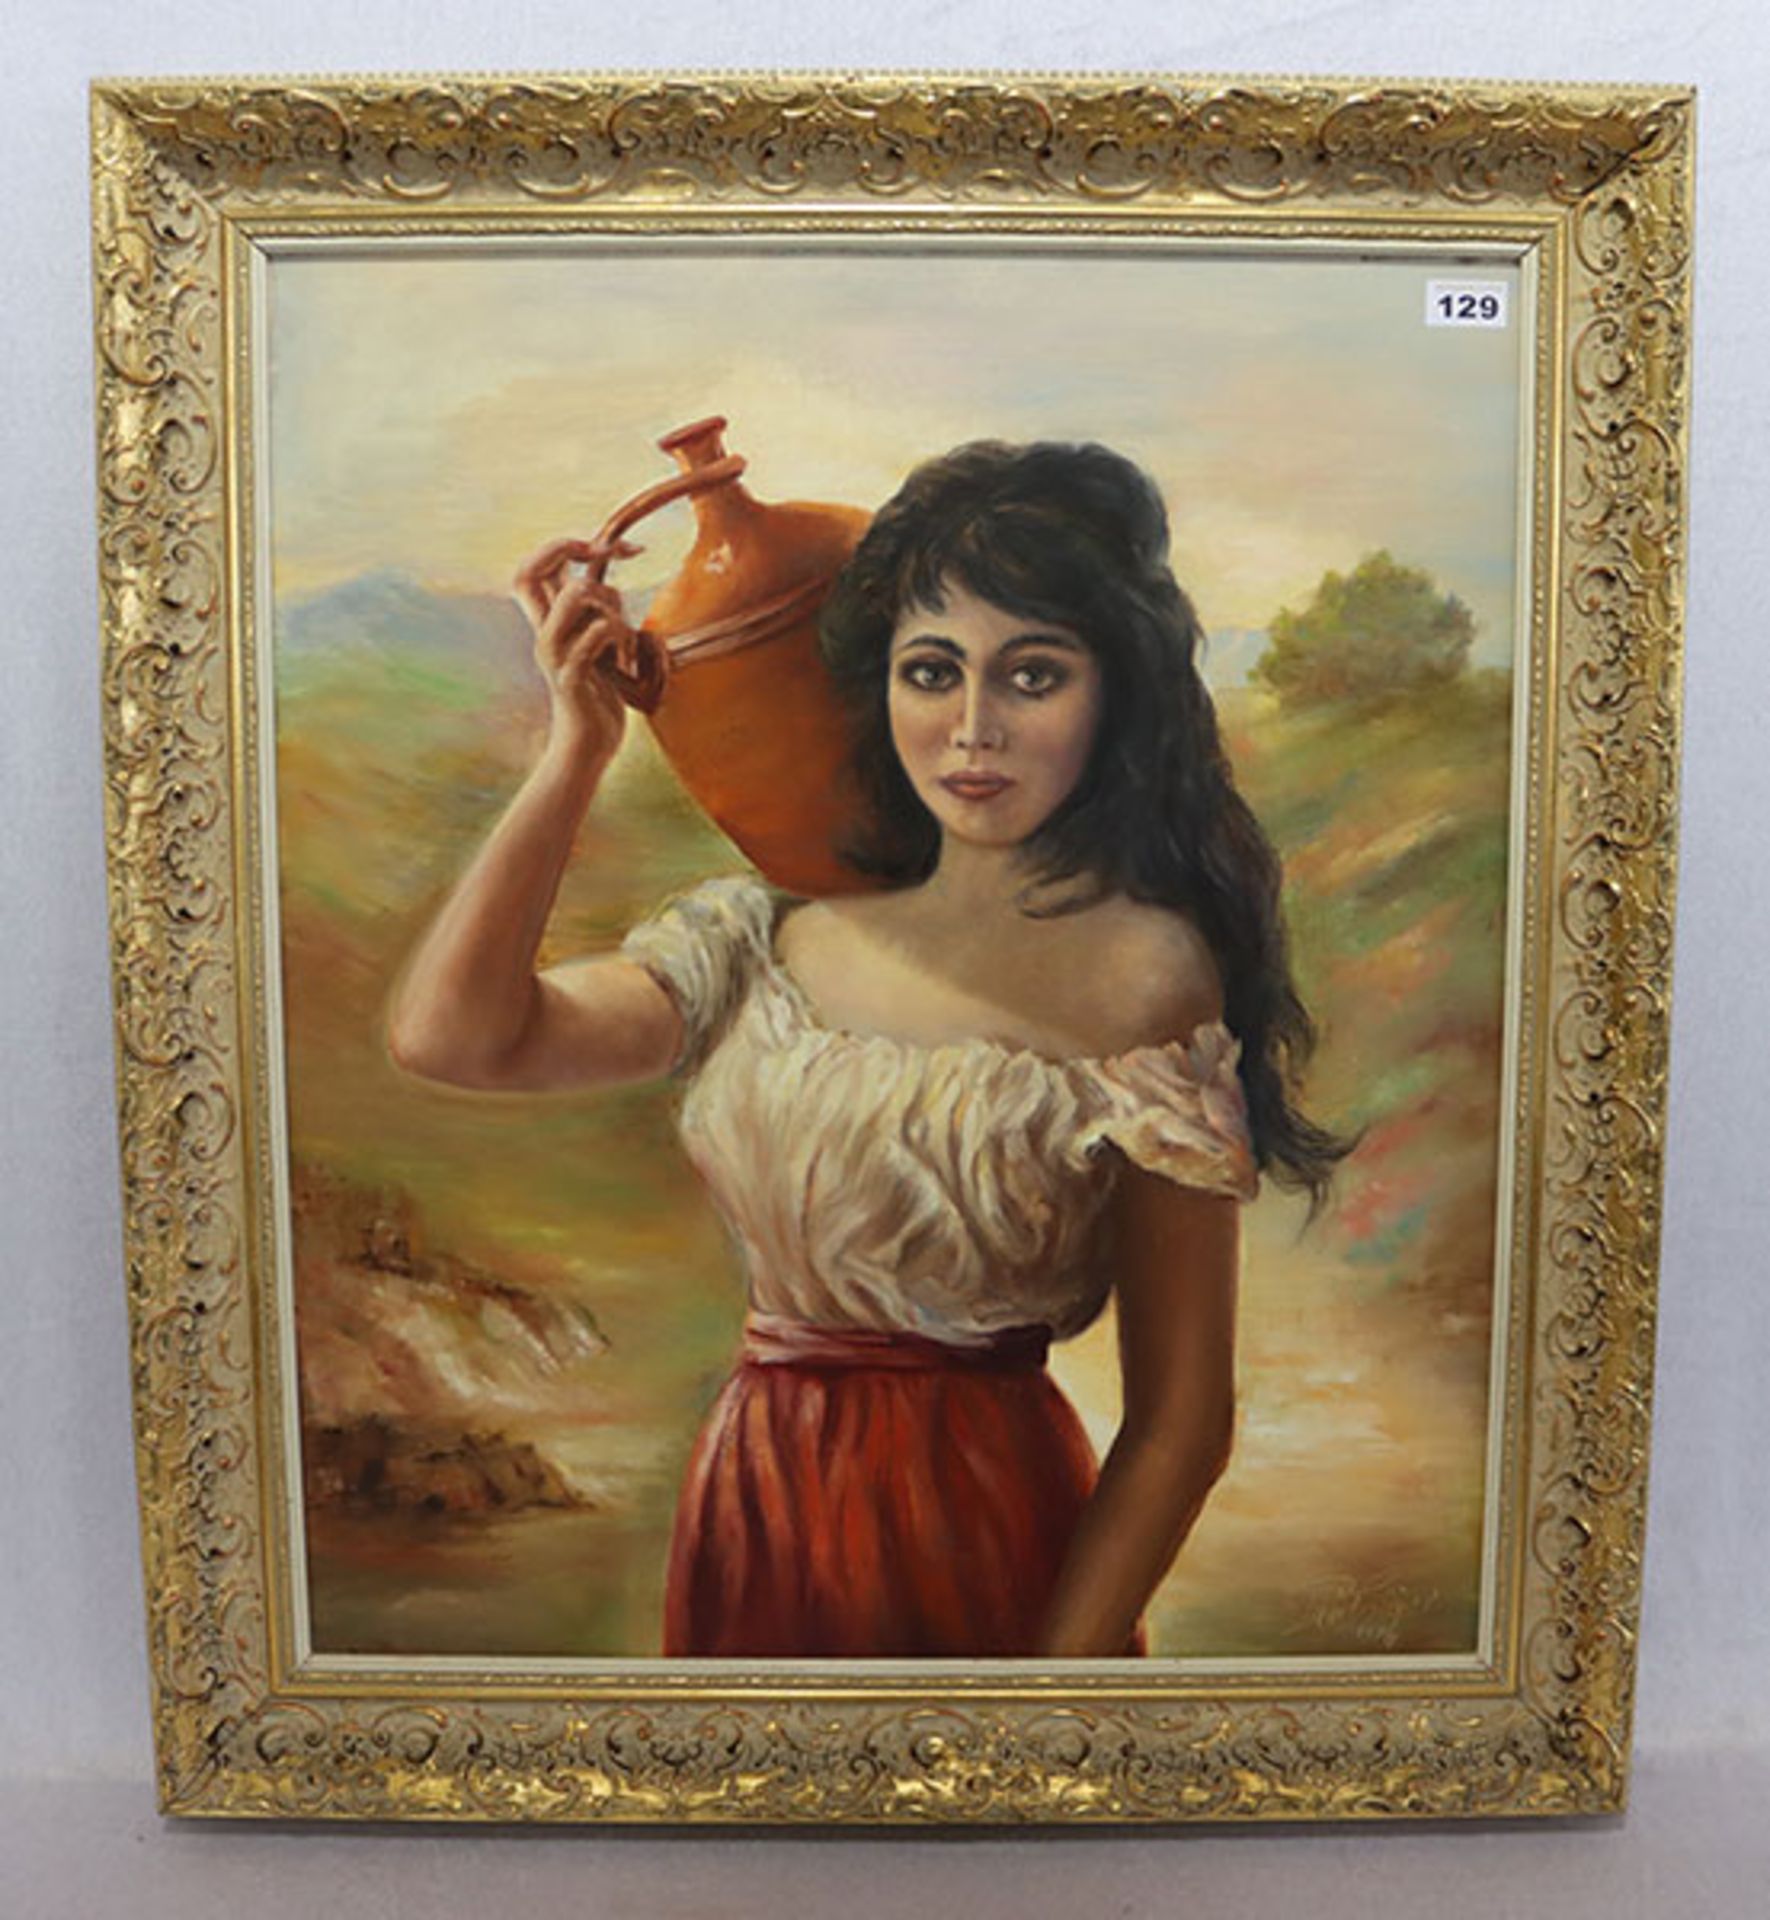 Gemälde ÖL/LW 'Frau mit Wasserkrug', undeutlich signiert und datiert 1976, gerahmt, incl. Rahmen